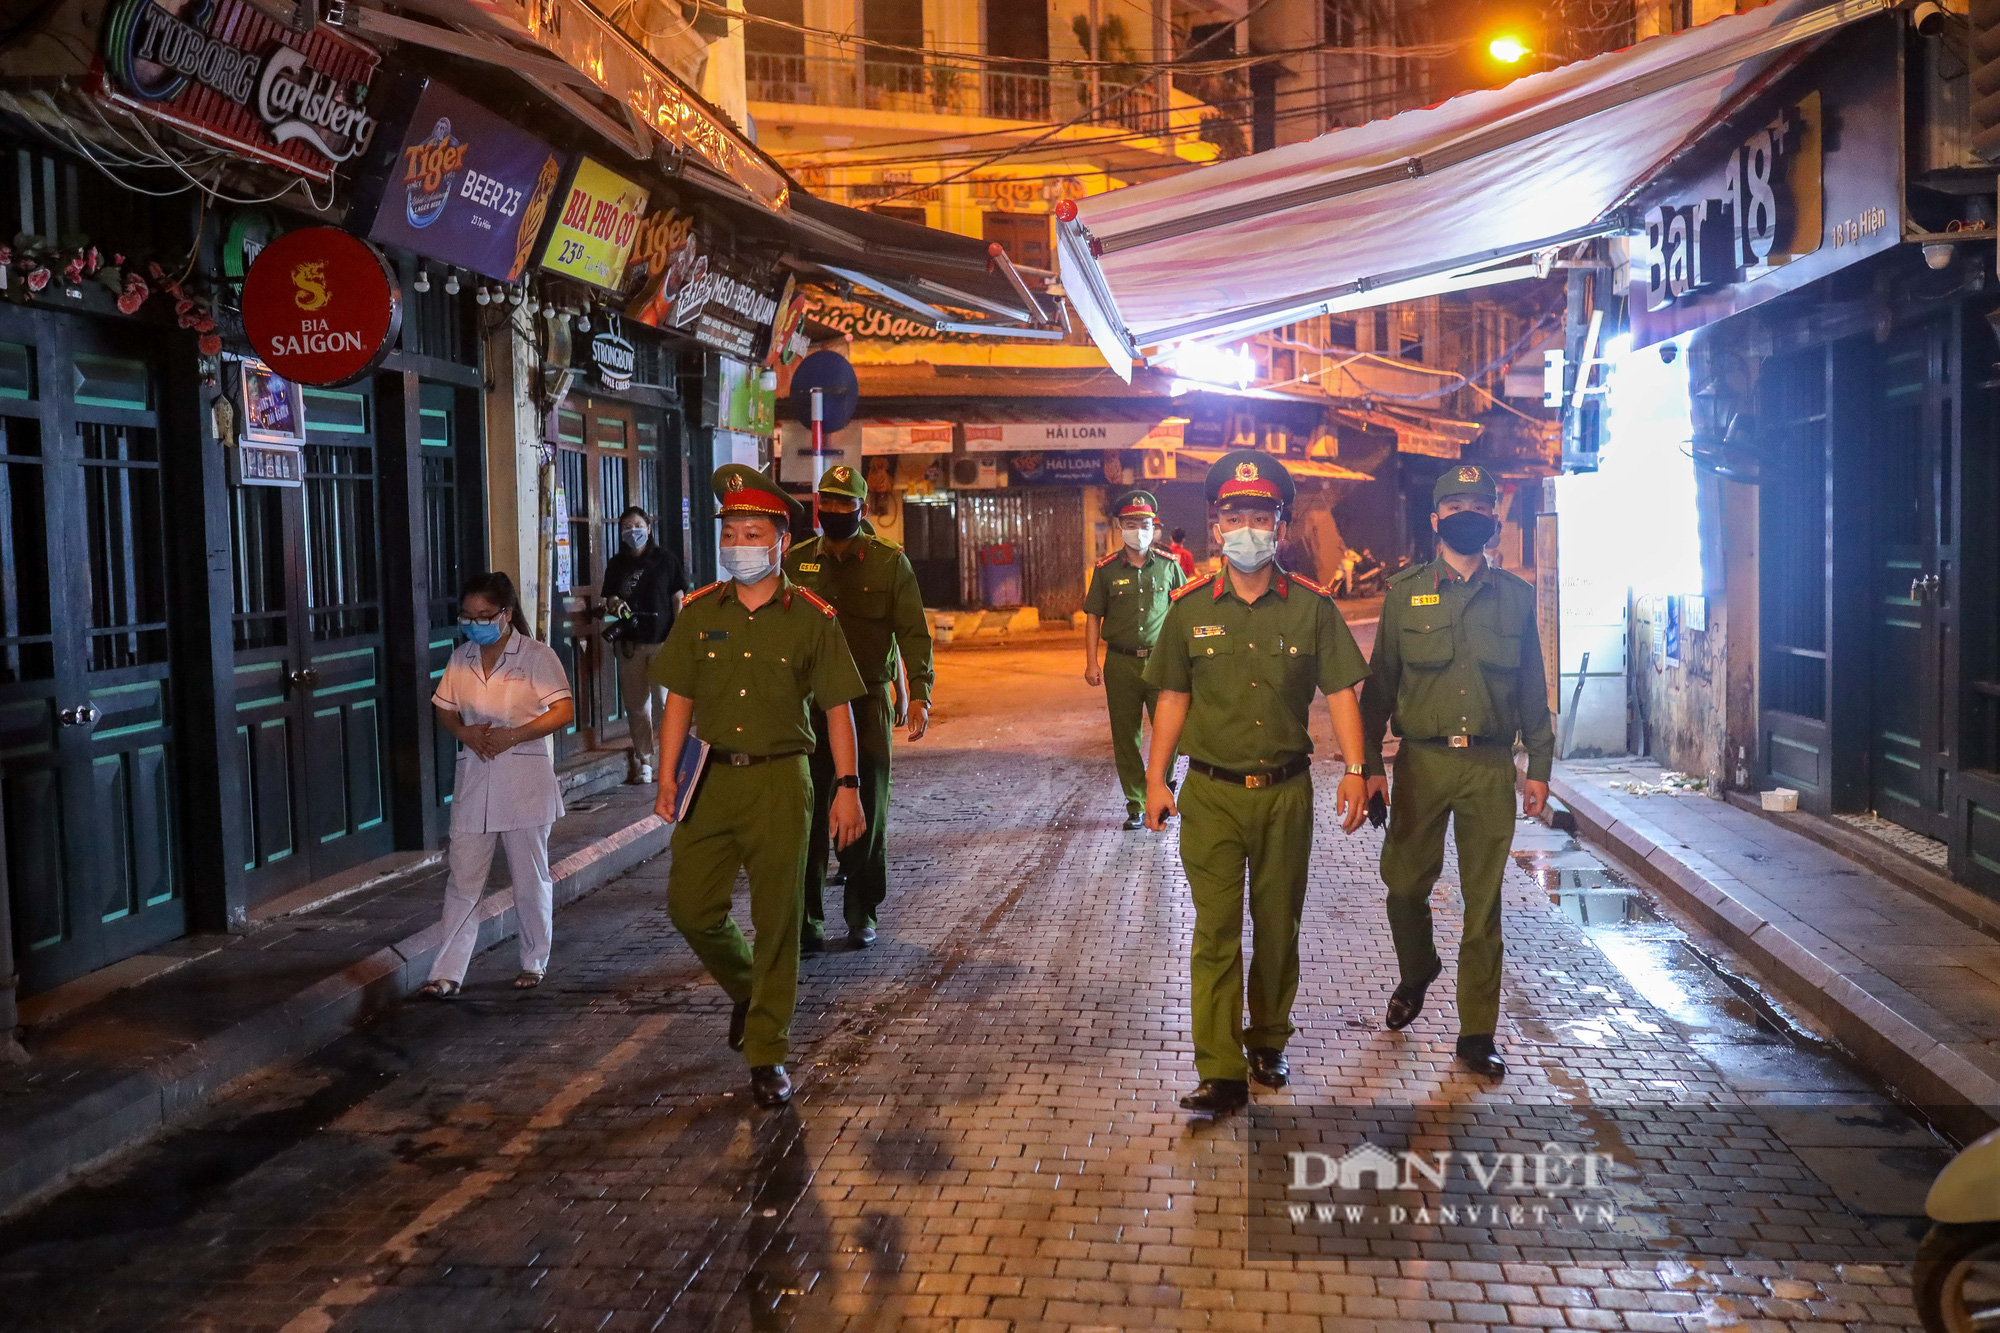 Hàng, quán ở Hà Nội đồng loạt thực hiện giãn cách trong đêm - Ảnh 2.